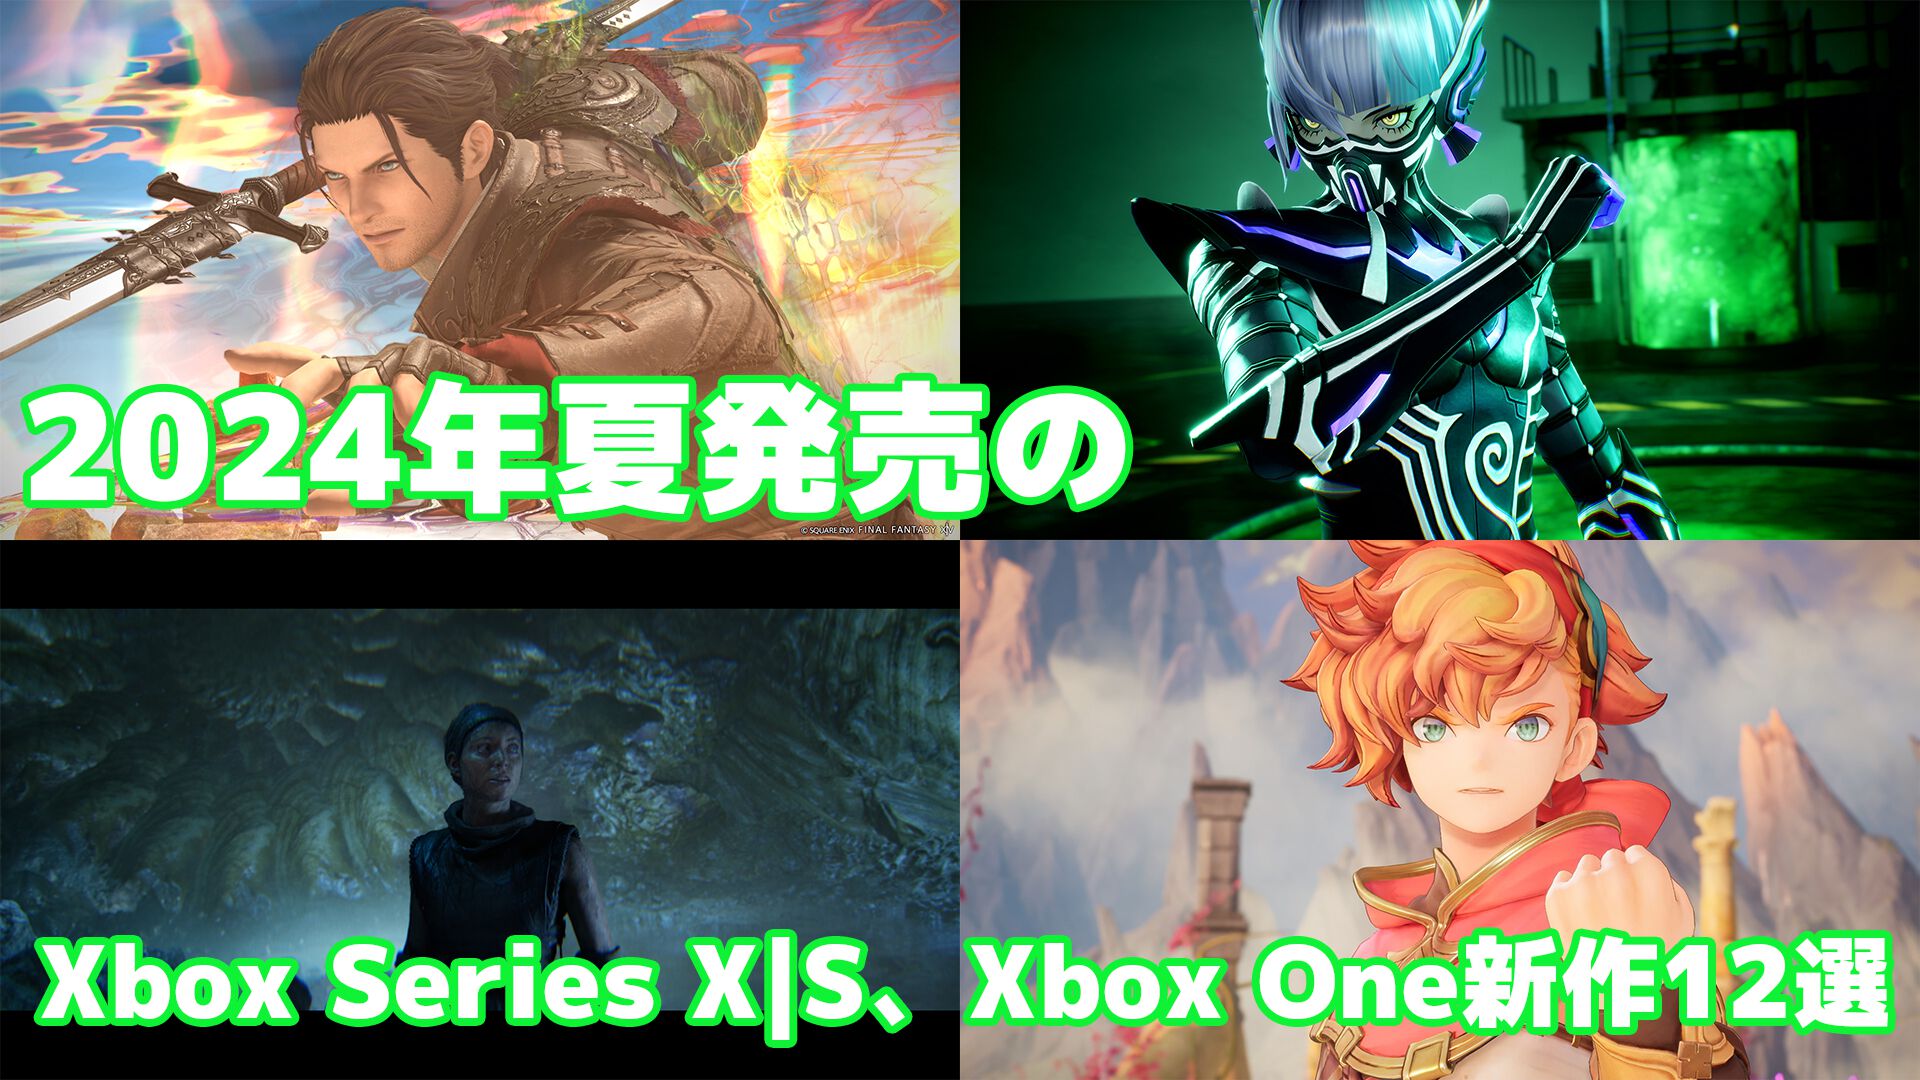 2024年夏のXbox Series X|S、Xbox One新作ゲーム12選。『Senua's Saga: Hellblade II』や『真・女神転生V Vengeance』『FF14 黄金のレガシー』『聖剣伝説 ヴィジョンズ オブ マナ』など期待作揃い